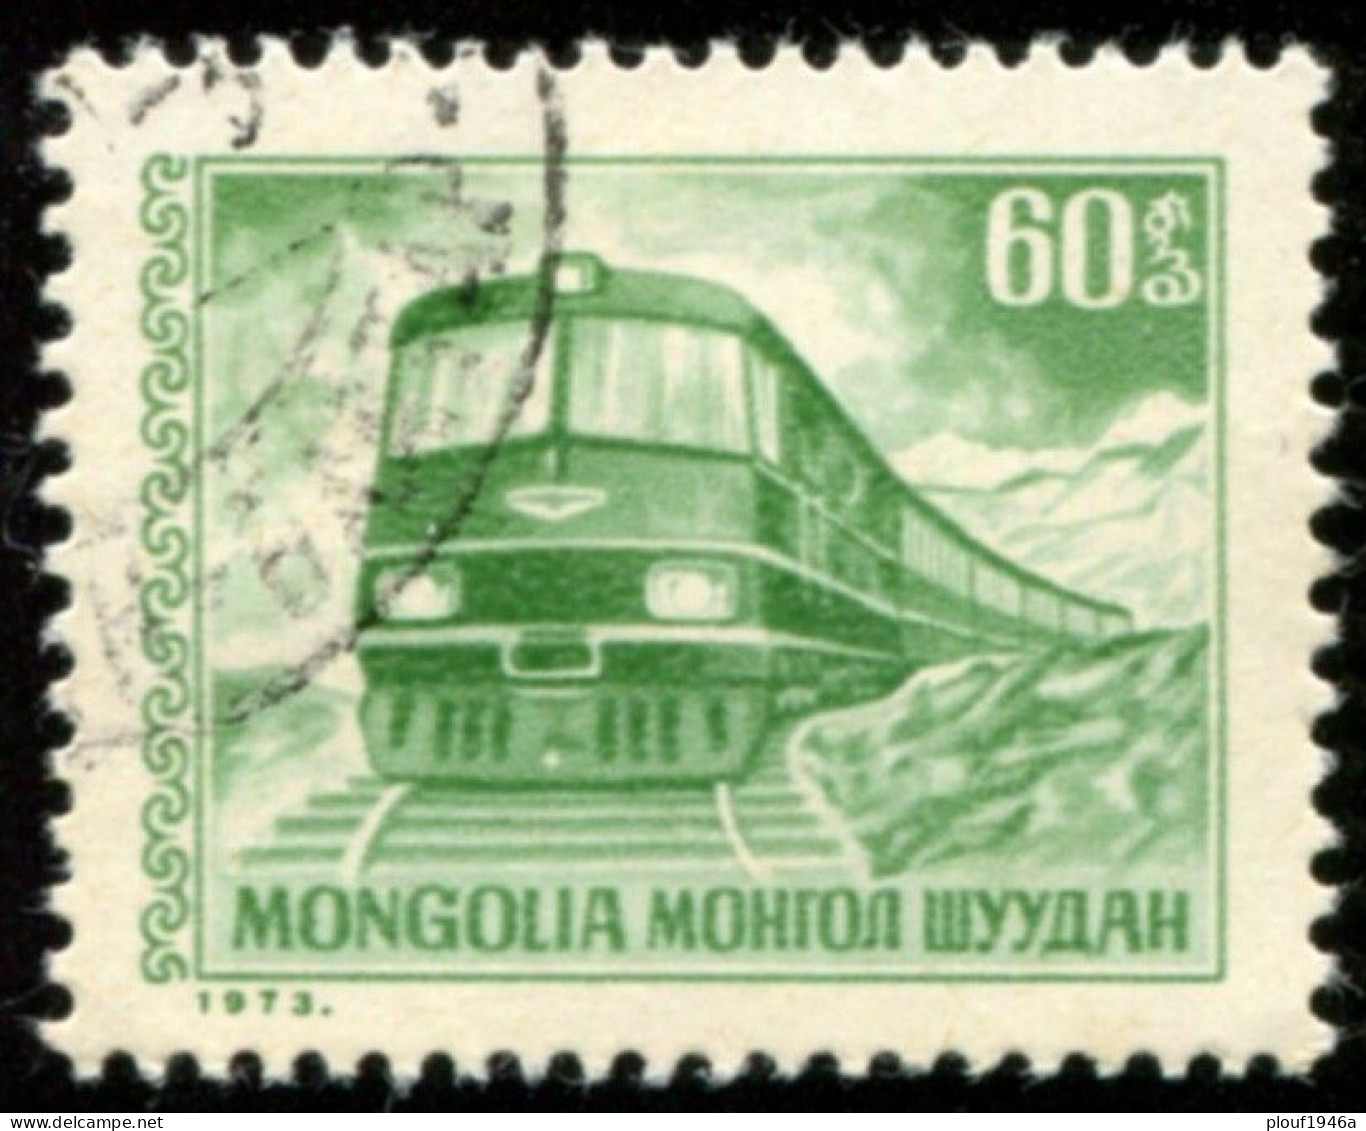 Pays : 330 (Mongolie)        Yvert Et Tellier N° :   660 (o) - Mongolie